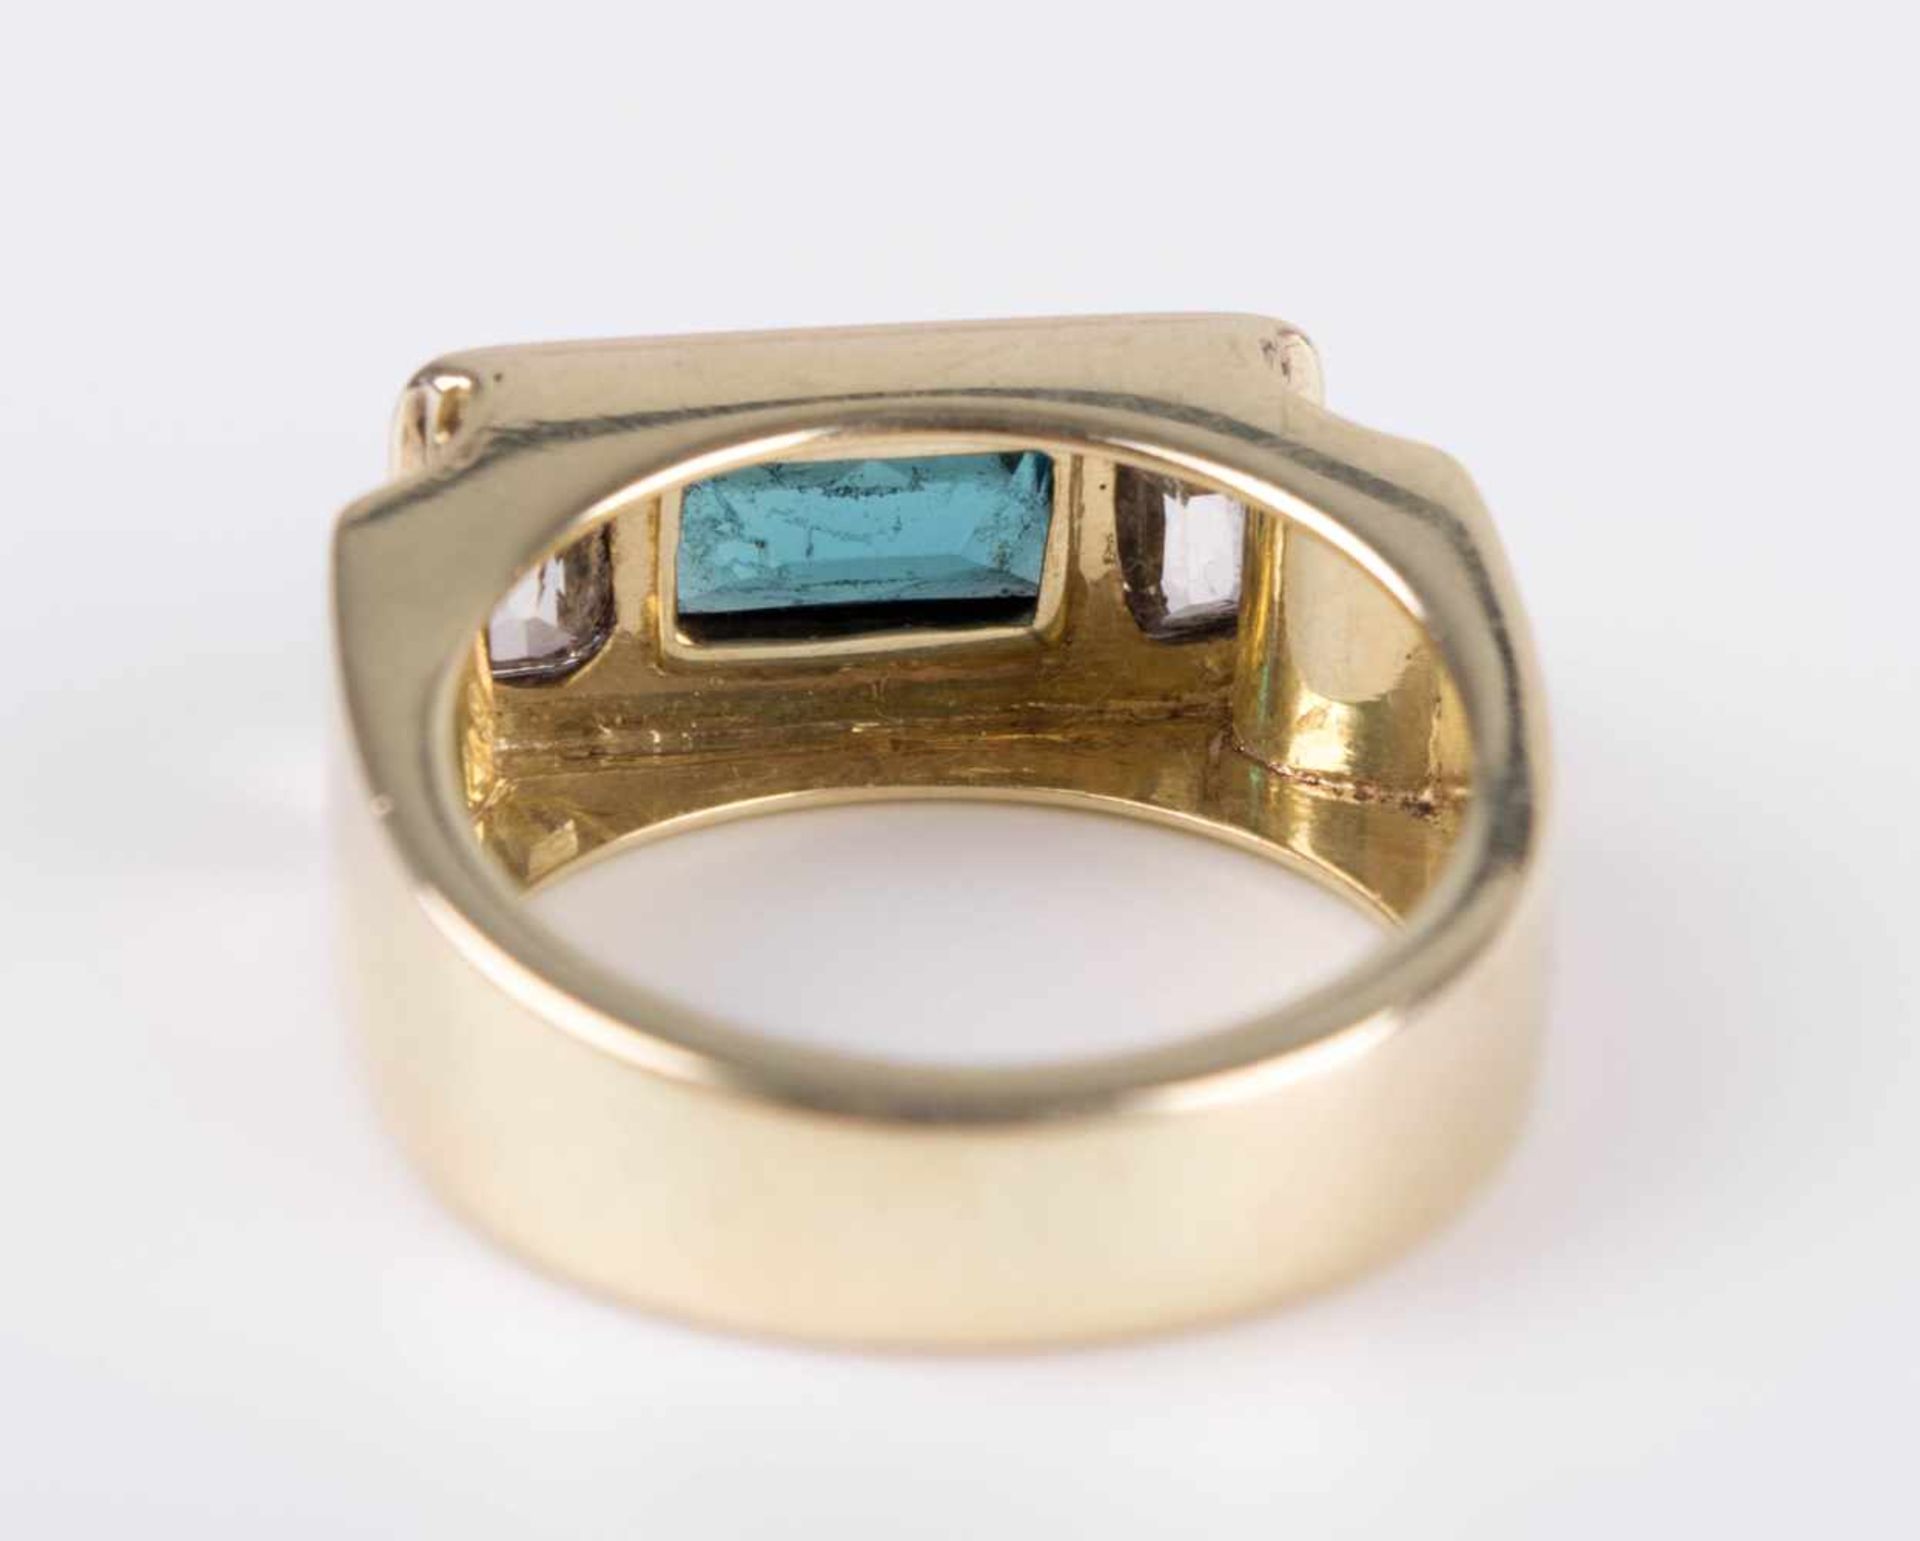 Aquamarin-Diamantring / Aquamarine-diamond ring GG 585/000, Aquamarin ca. 2 ct, 2 Diamanten im - Bild 8 aus 10